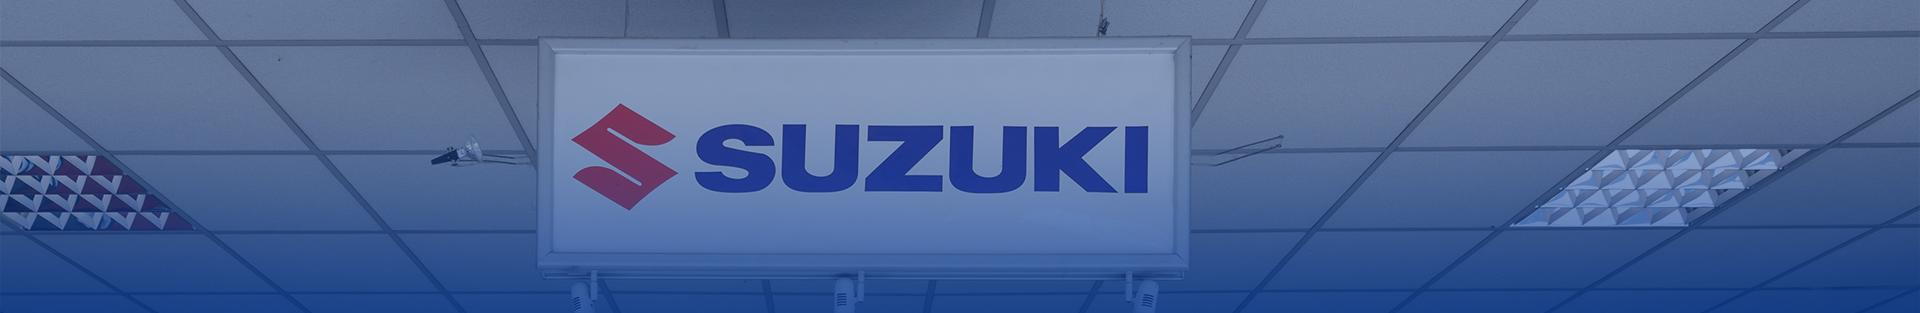 Objednání testovací jízdy Suzuki